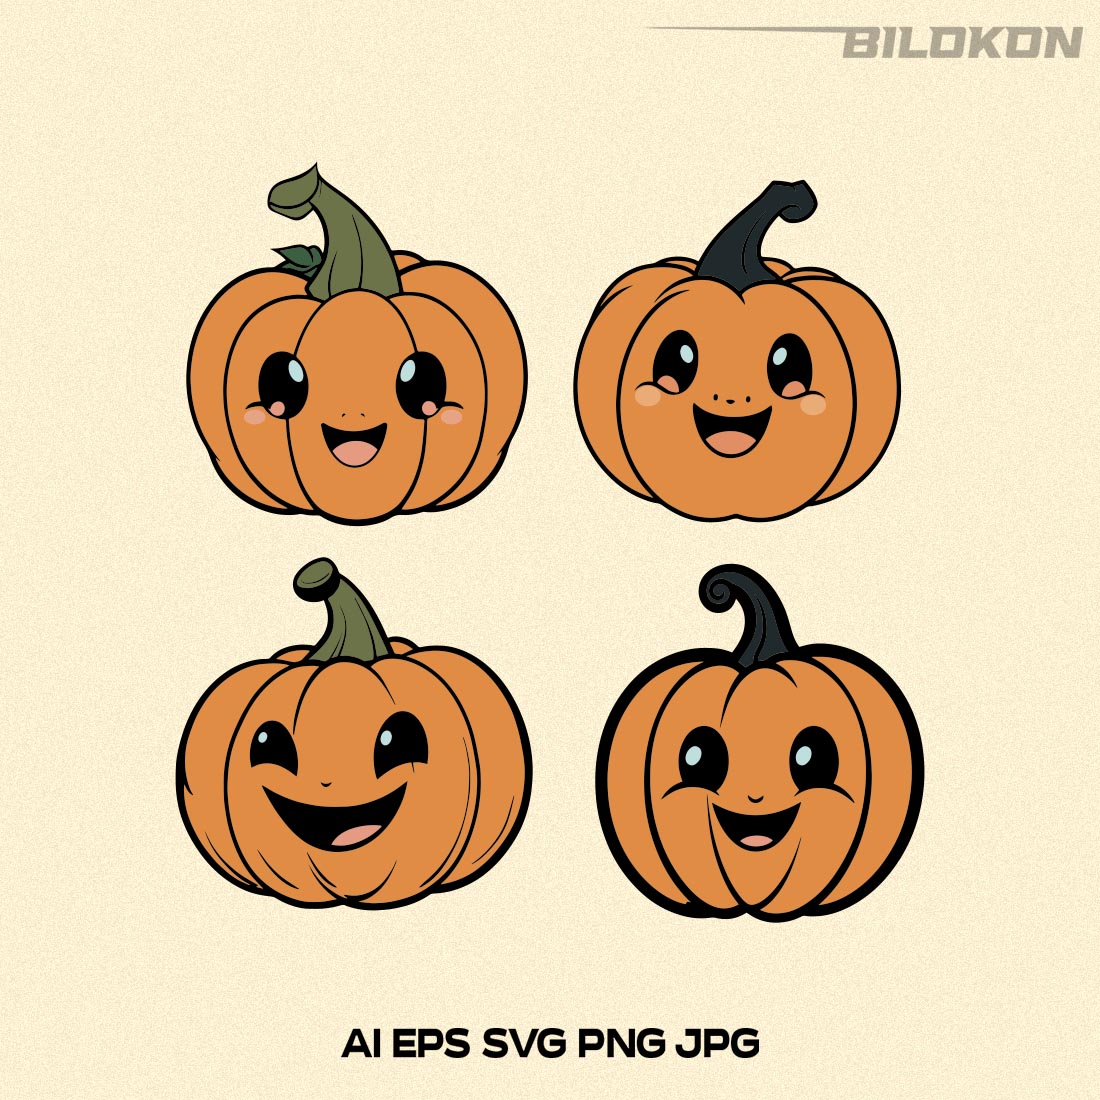 Cartoon Halloween Pumpkin SVG, Halloween Pumpkin Design SVG preview image.